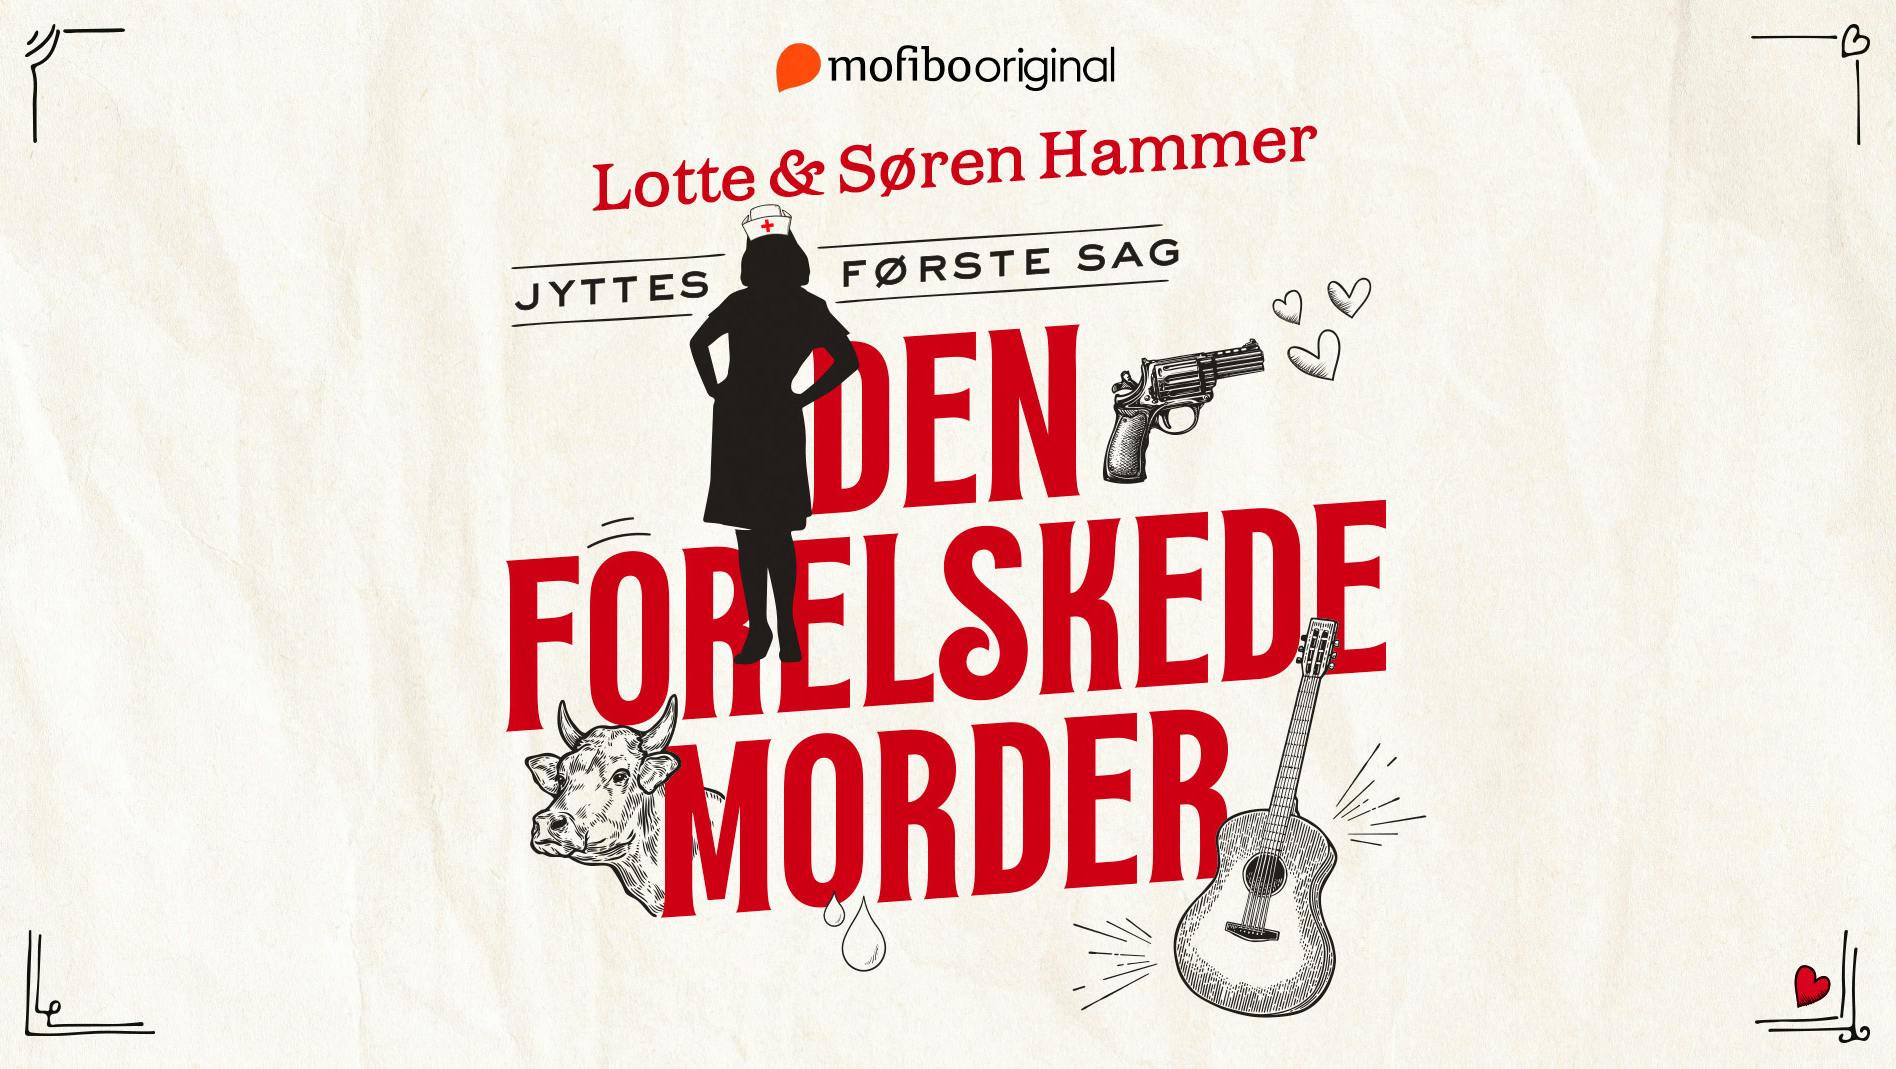 'Den forelskede morder' af Lotte og Søren Hammer